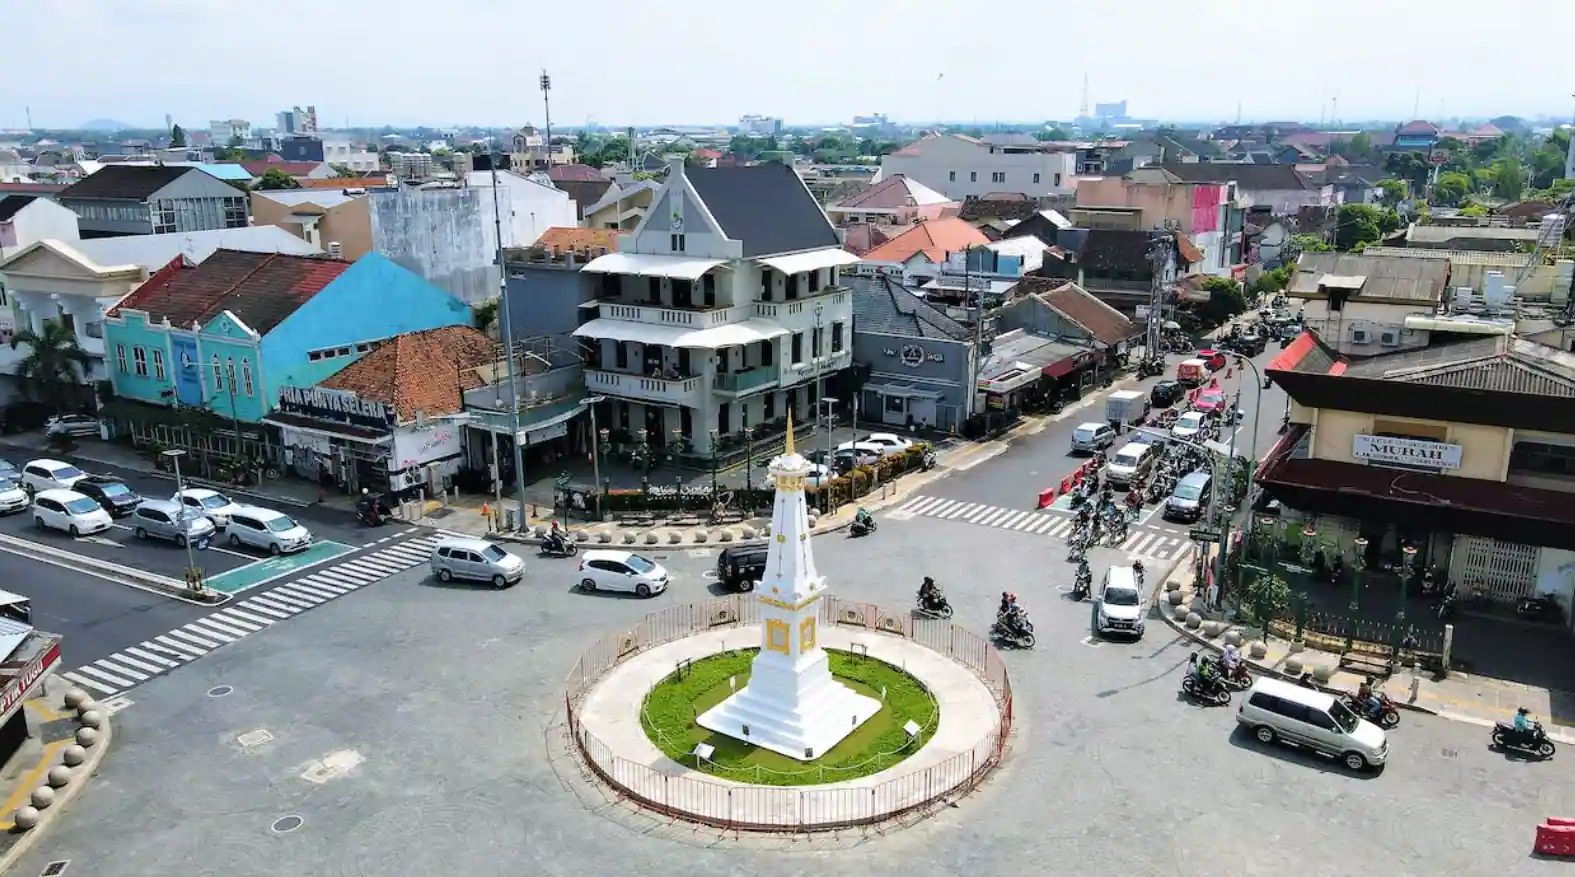 Tempat Menjelajahi? Pesona Wisata Kota Yogyakarta!